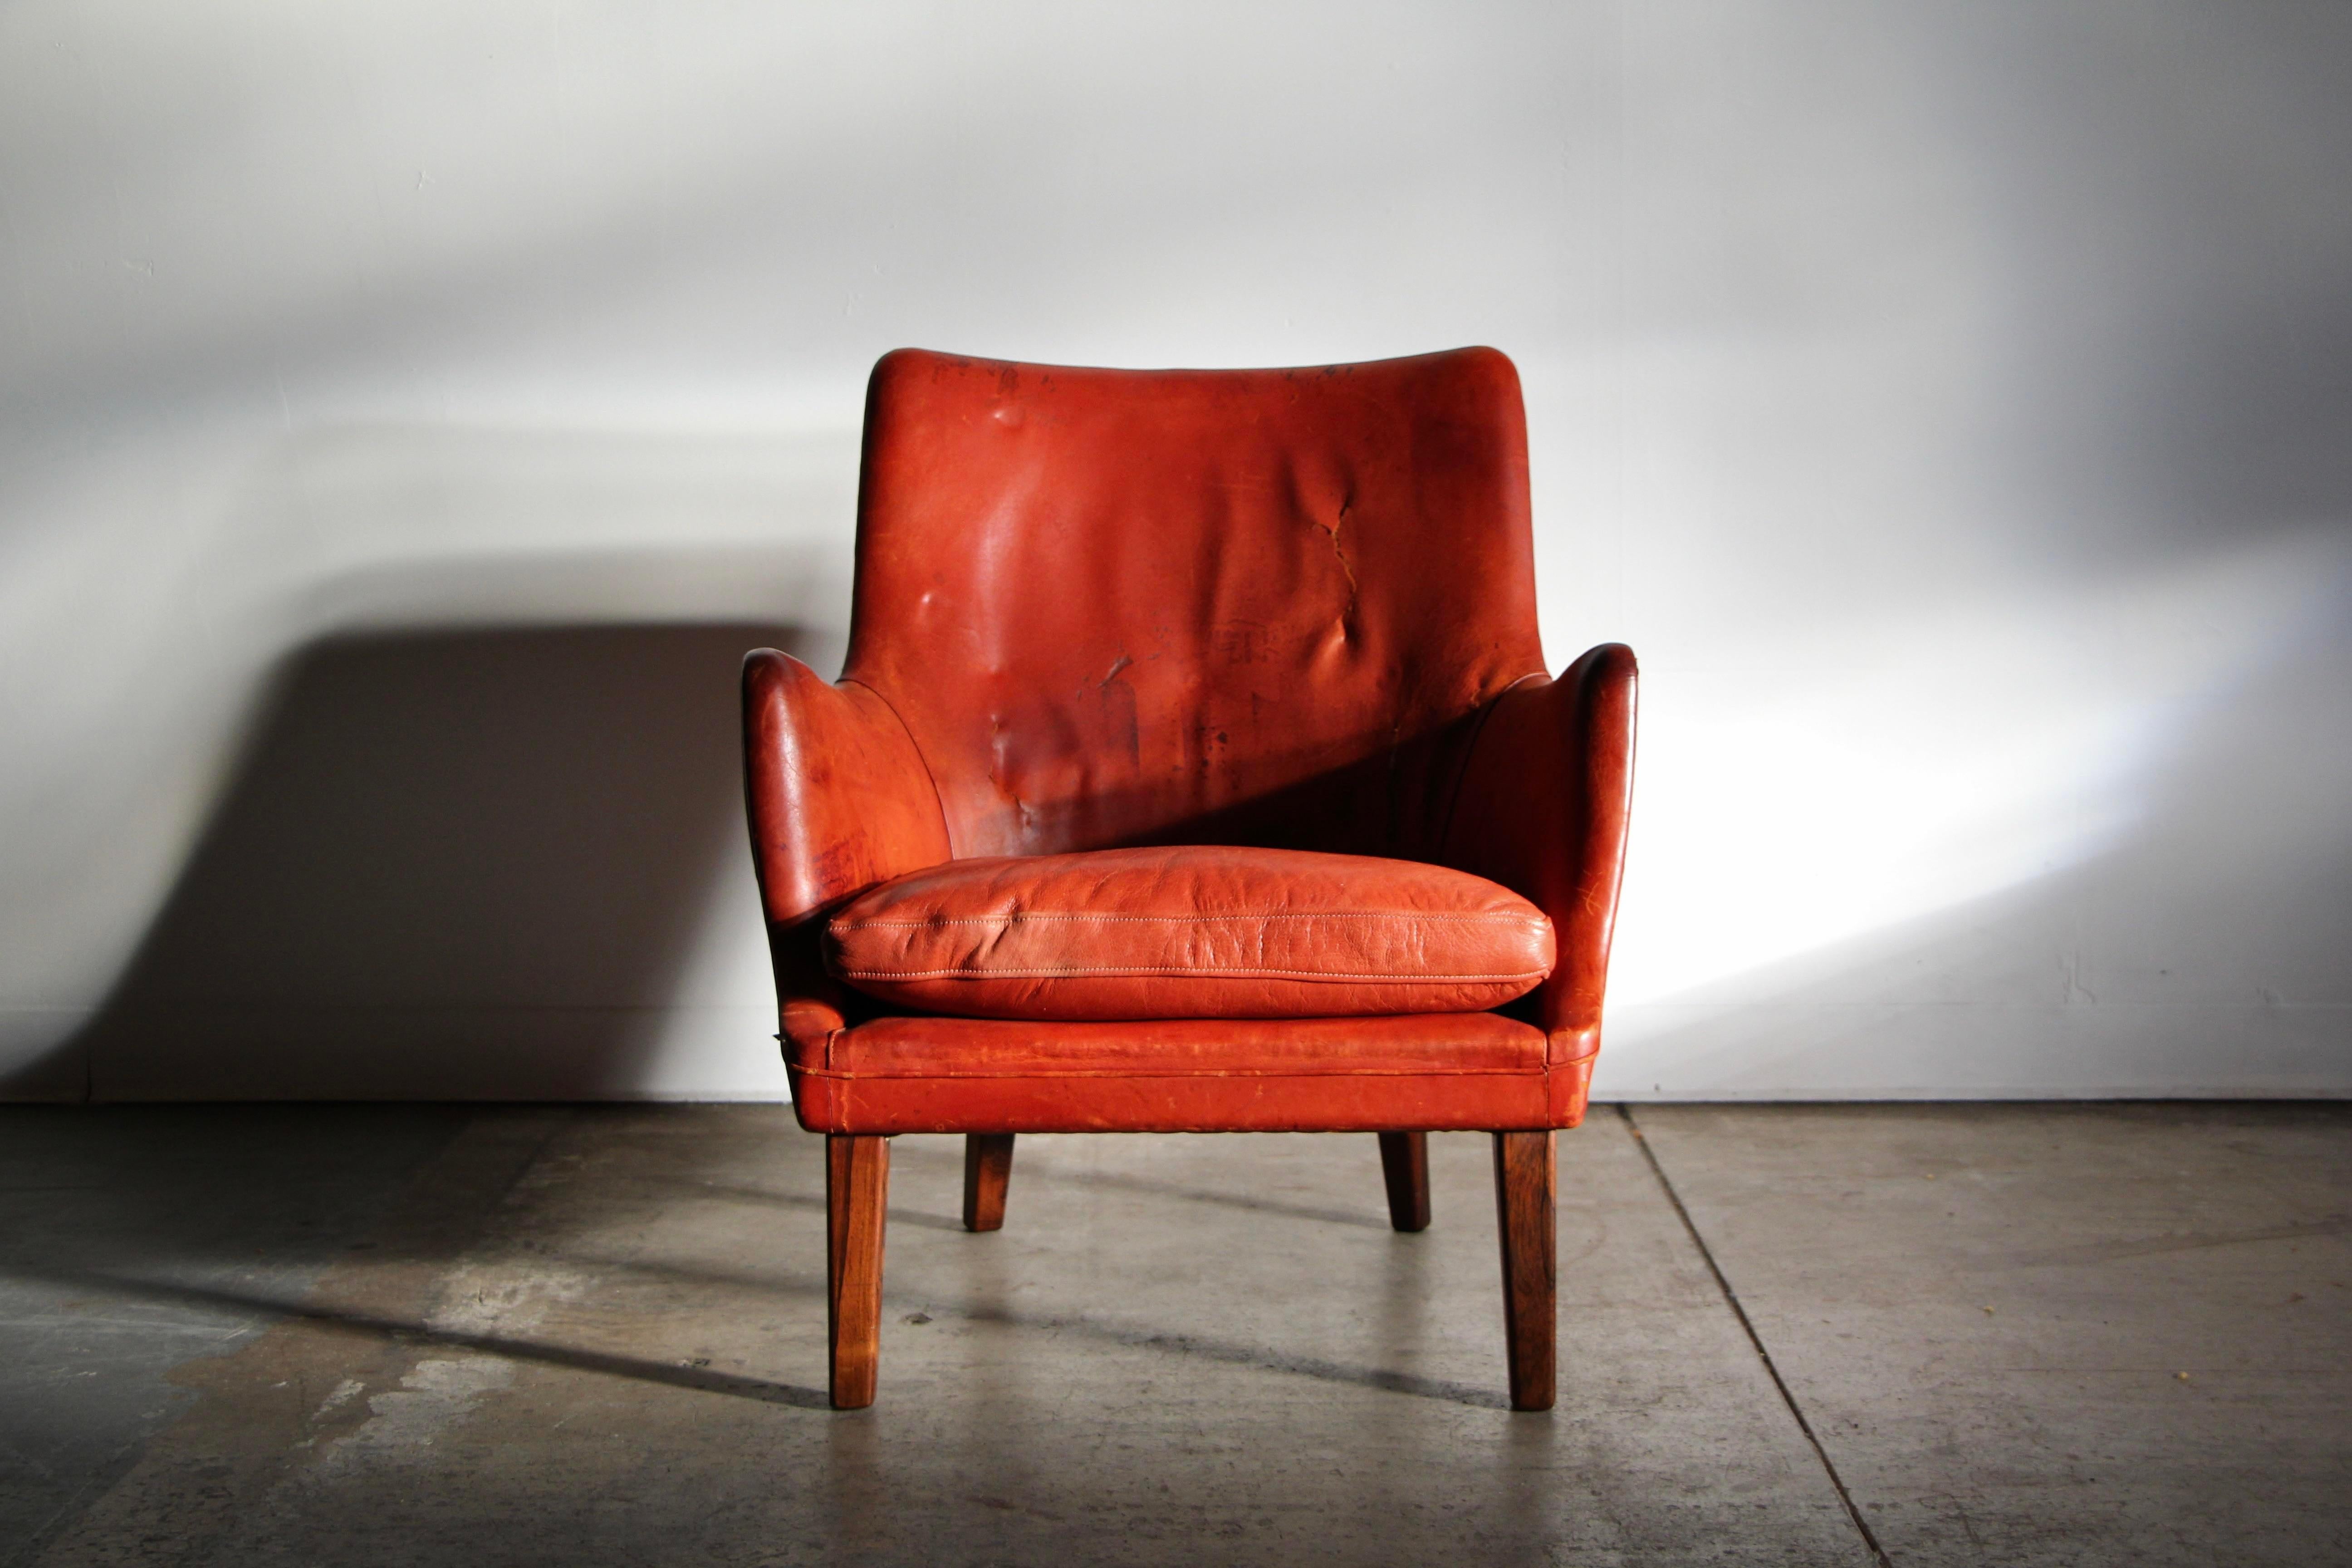 Chaise longue aux proportions magnifiques d'Arne Vodder, fabriquée par Ivan Schlechter au début des années 1950. Cet exemplaire arbore son cuir cognac d'origine, usé et ardent, et présente beaucoup de caractère. Quelques déchirures au niveau du